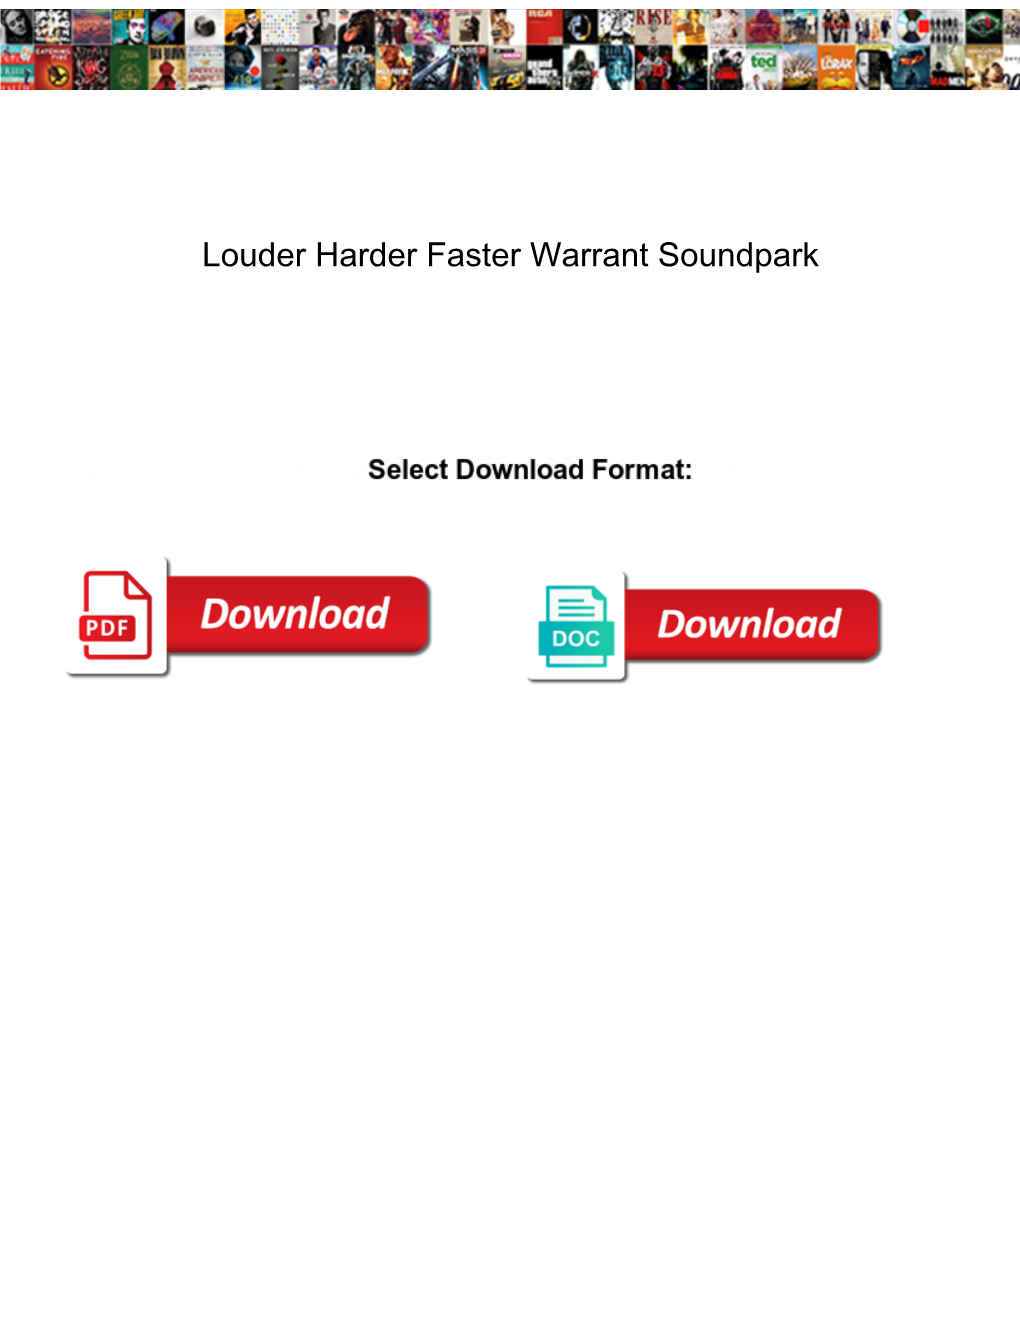 Louder Harder Faster Warrant Soundpark Request